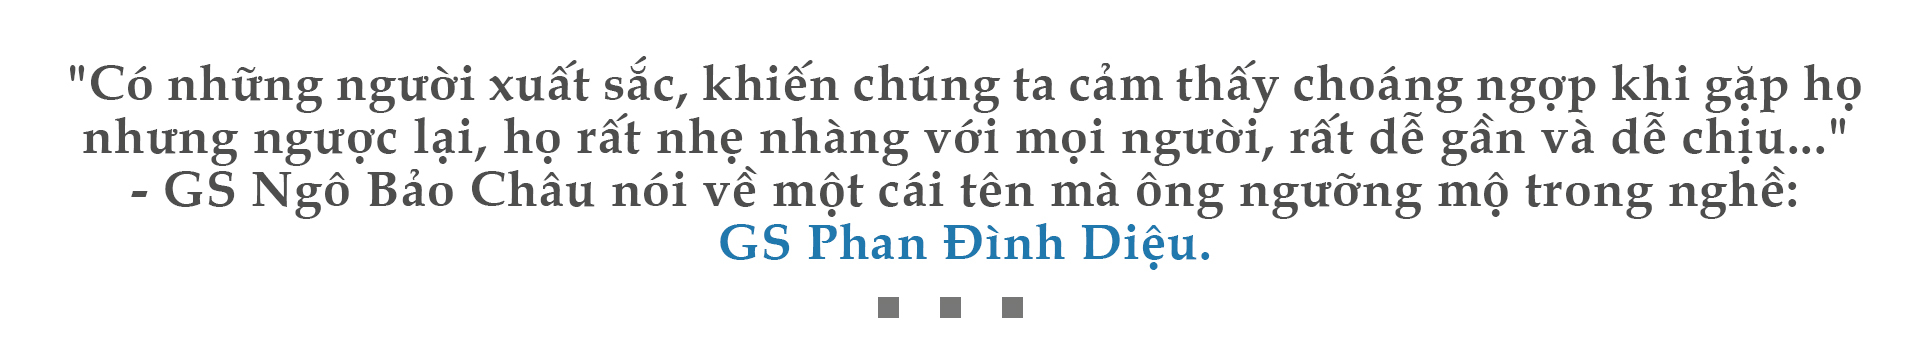 GS Phan Đình Diệu,GS Ngô Bảo Châu